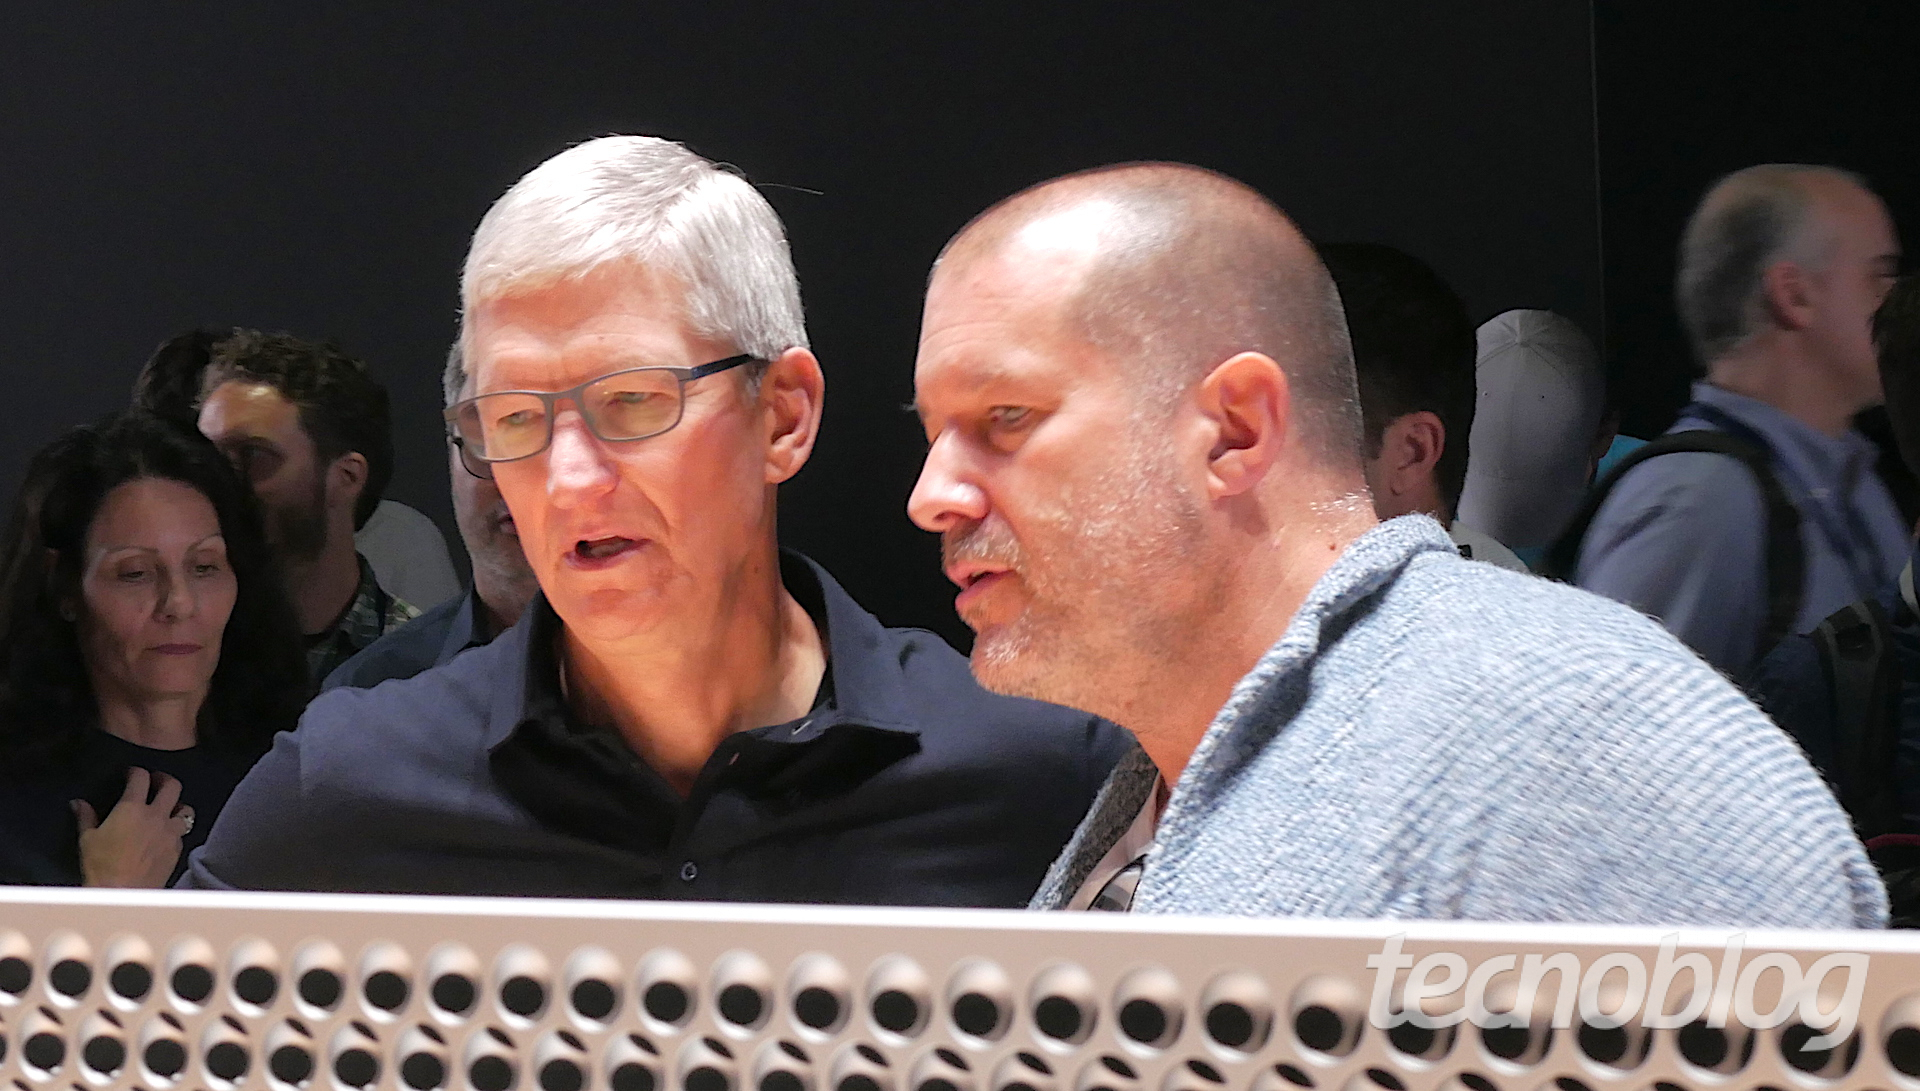 Jony Ive teria saído da Apple porque Tim Cook não estava interessado em design